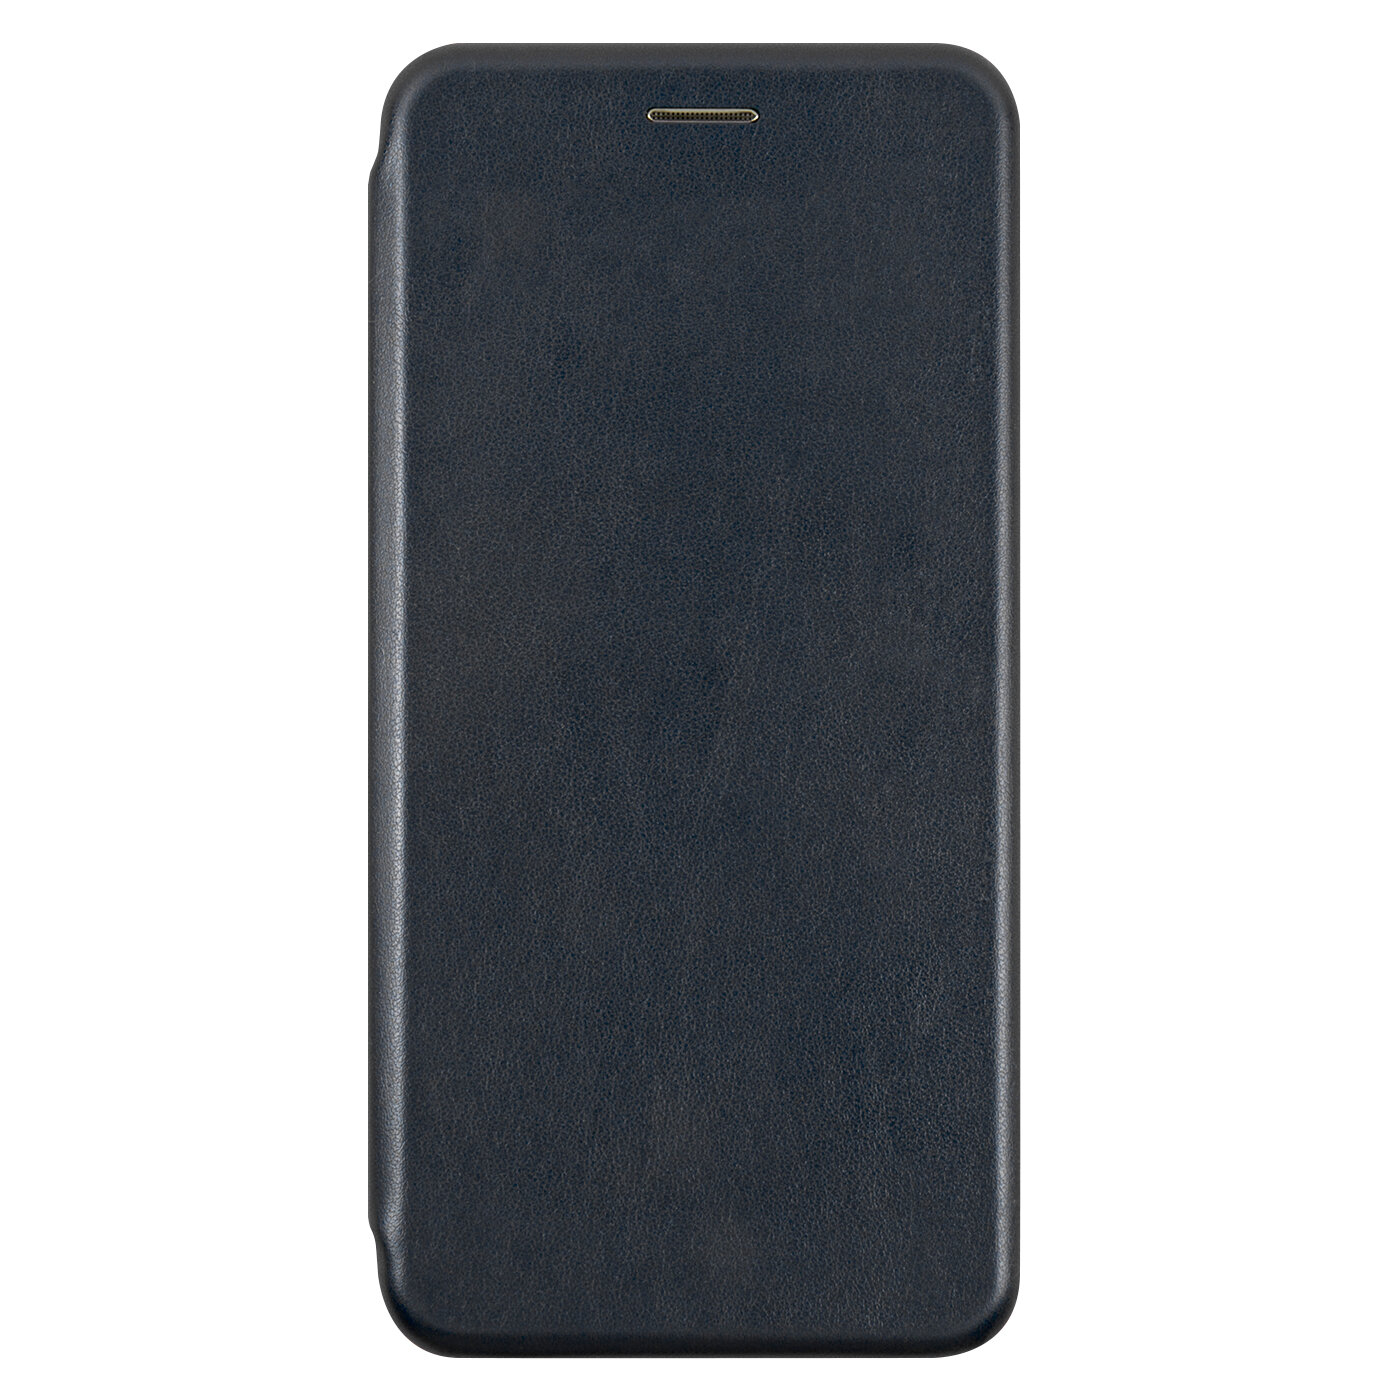 Защитный чехол-книжка на Xiaomi Redmi Note 8 Pro /Ксяоми Редми Ноут 8 Про/ Искуcственная кожа/ черный